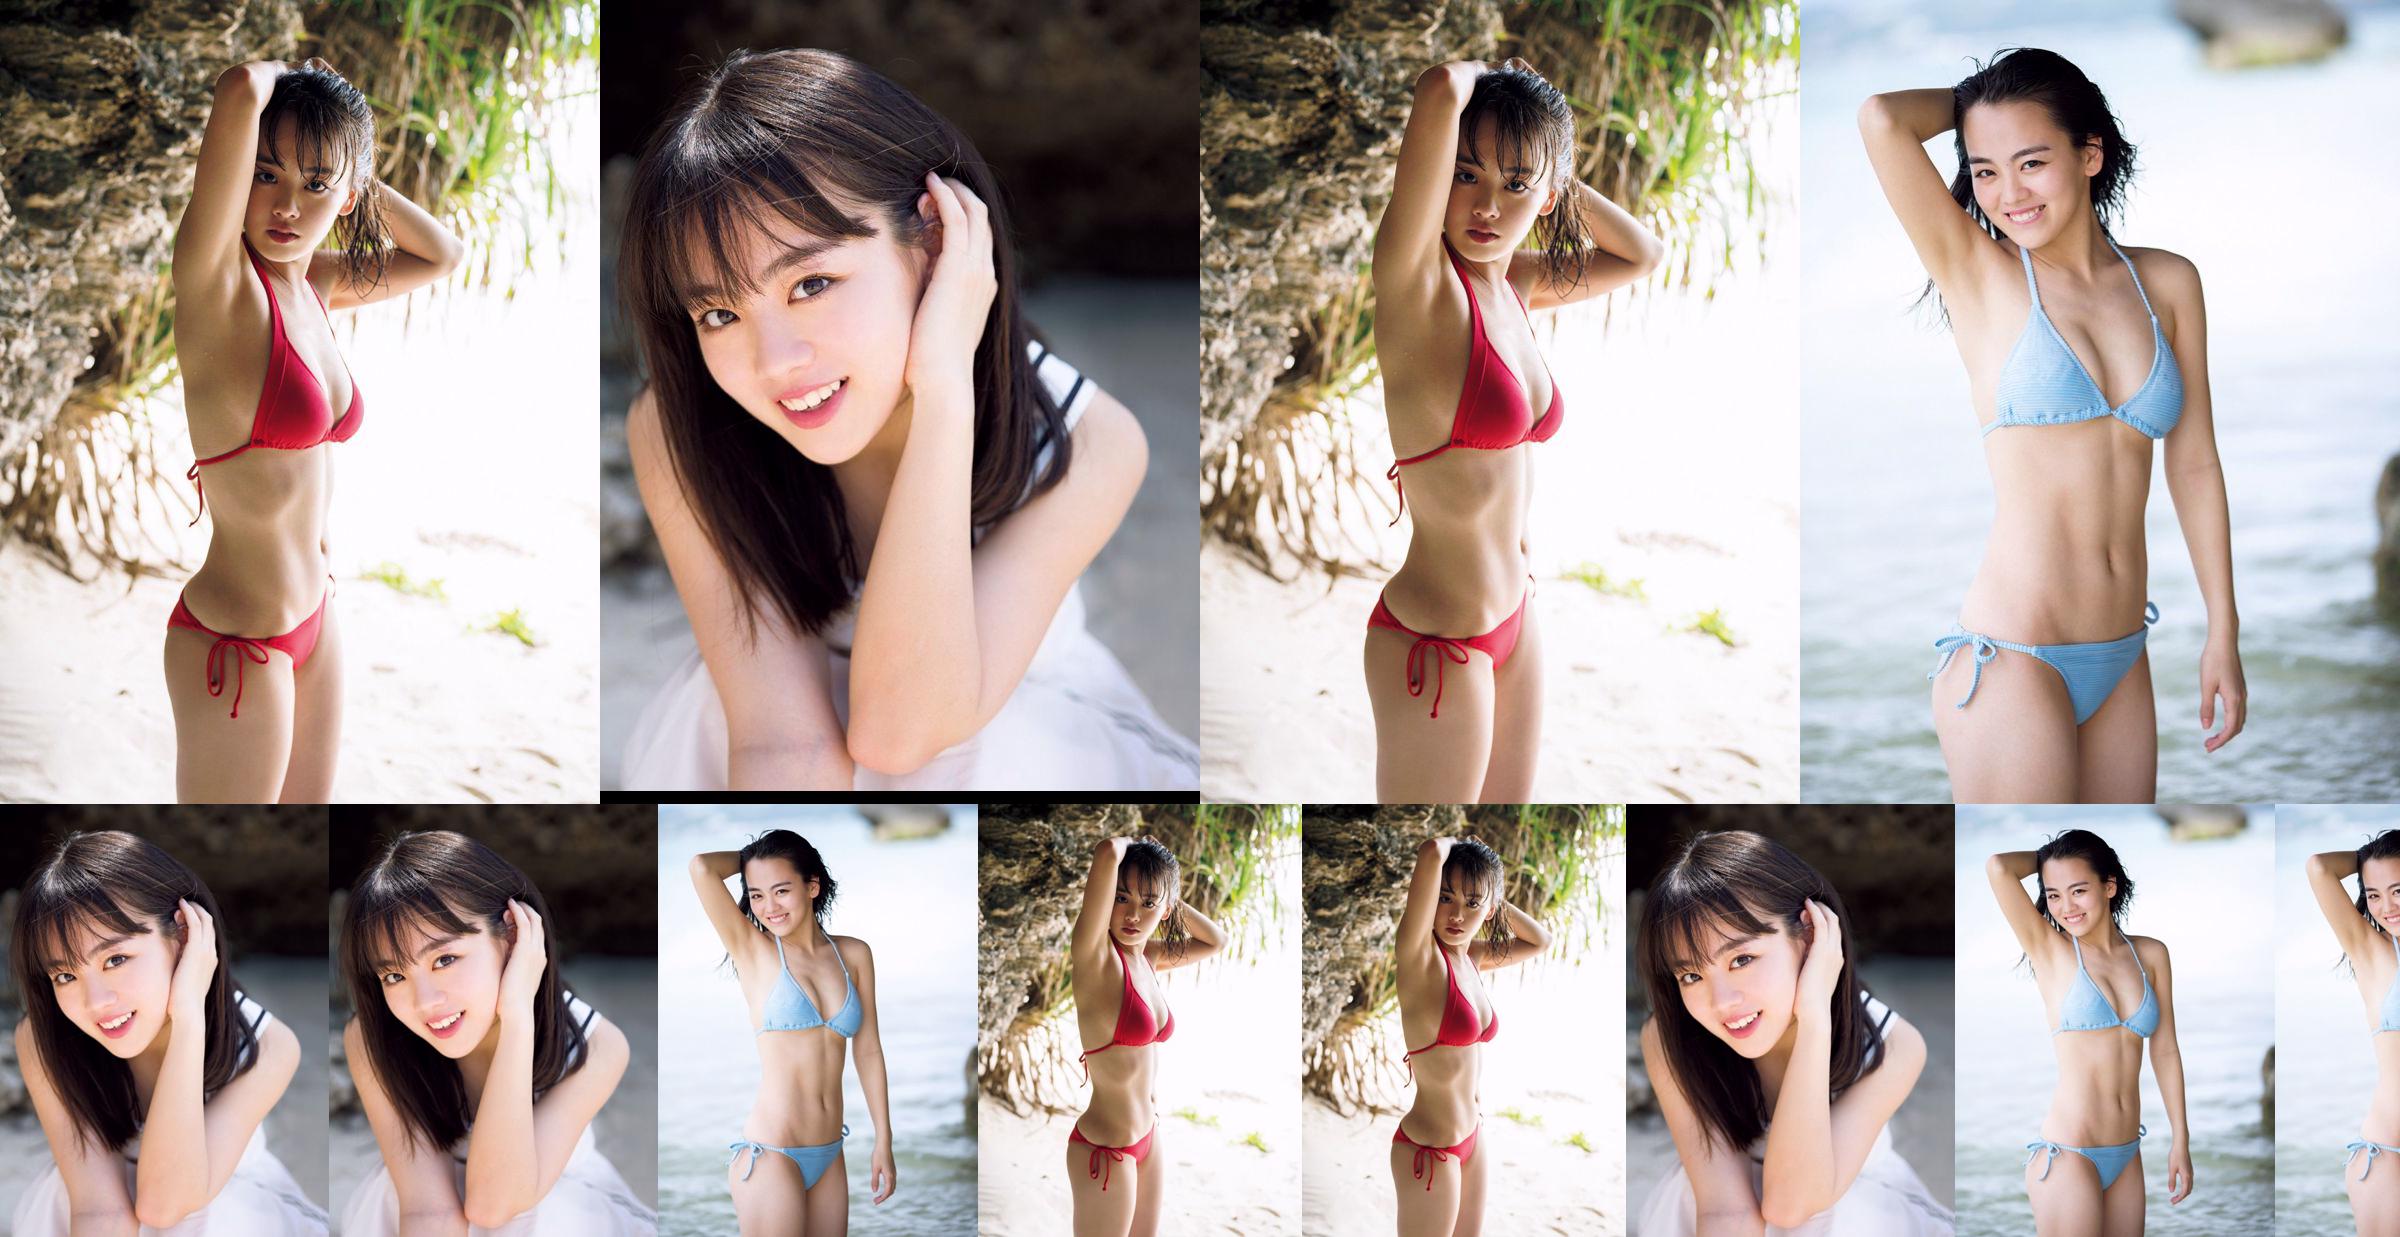 [VENERDI] Rikka Ihara << L'ex capitano della discoteca Tomioka High School debutta in bikini >> Foto No.fc6da3 Pagina 1